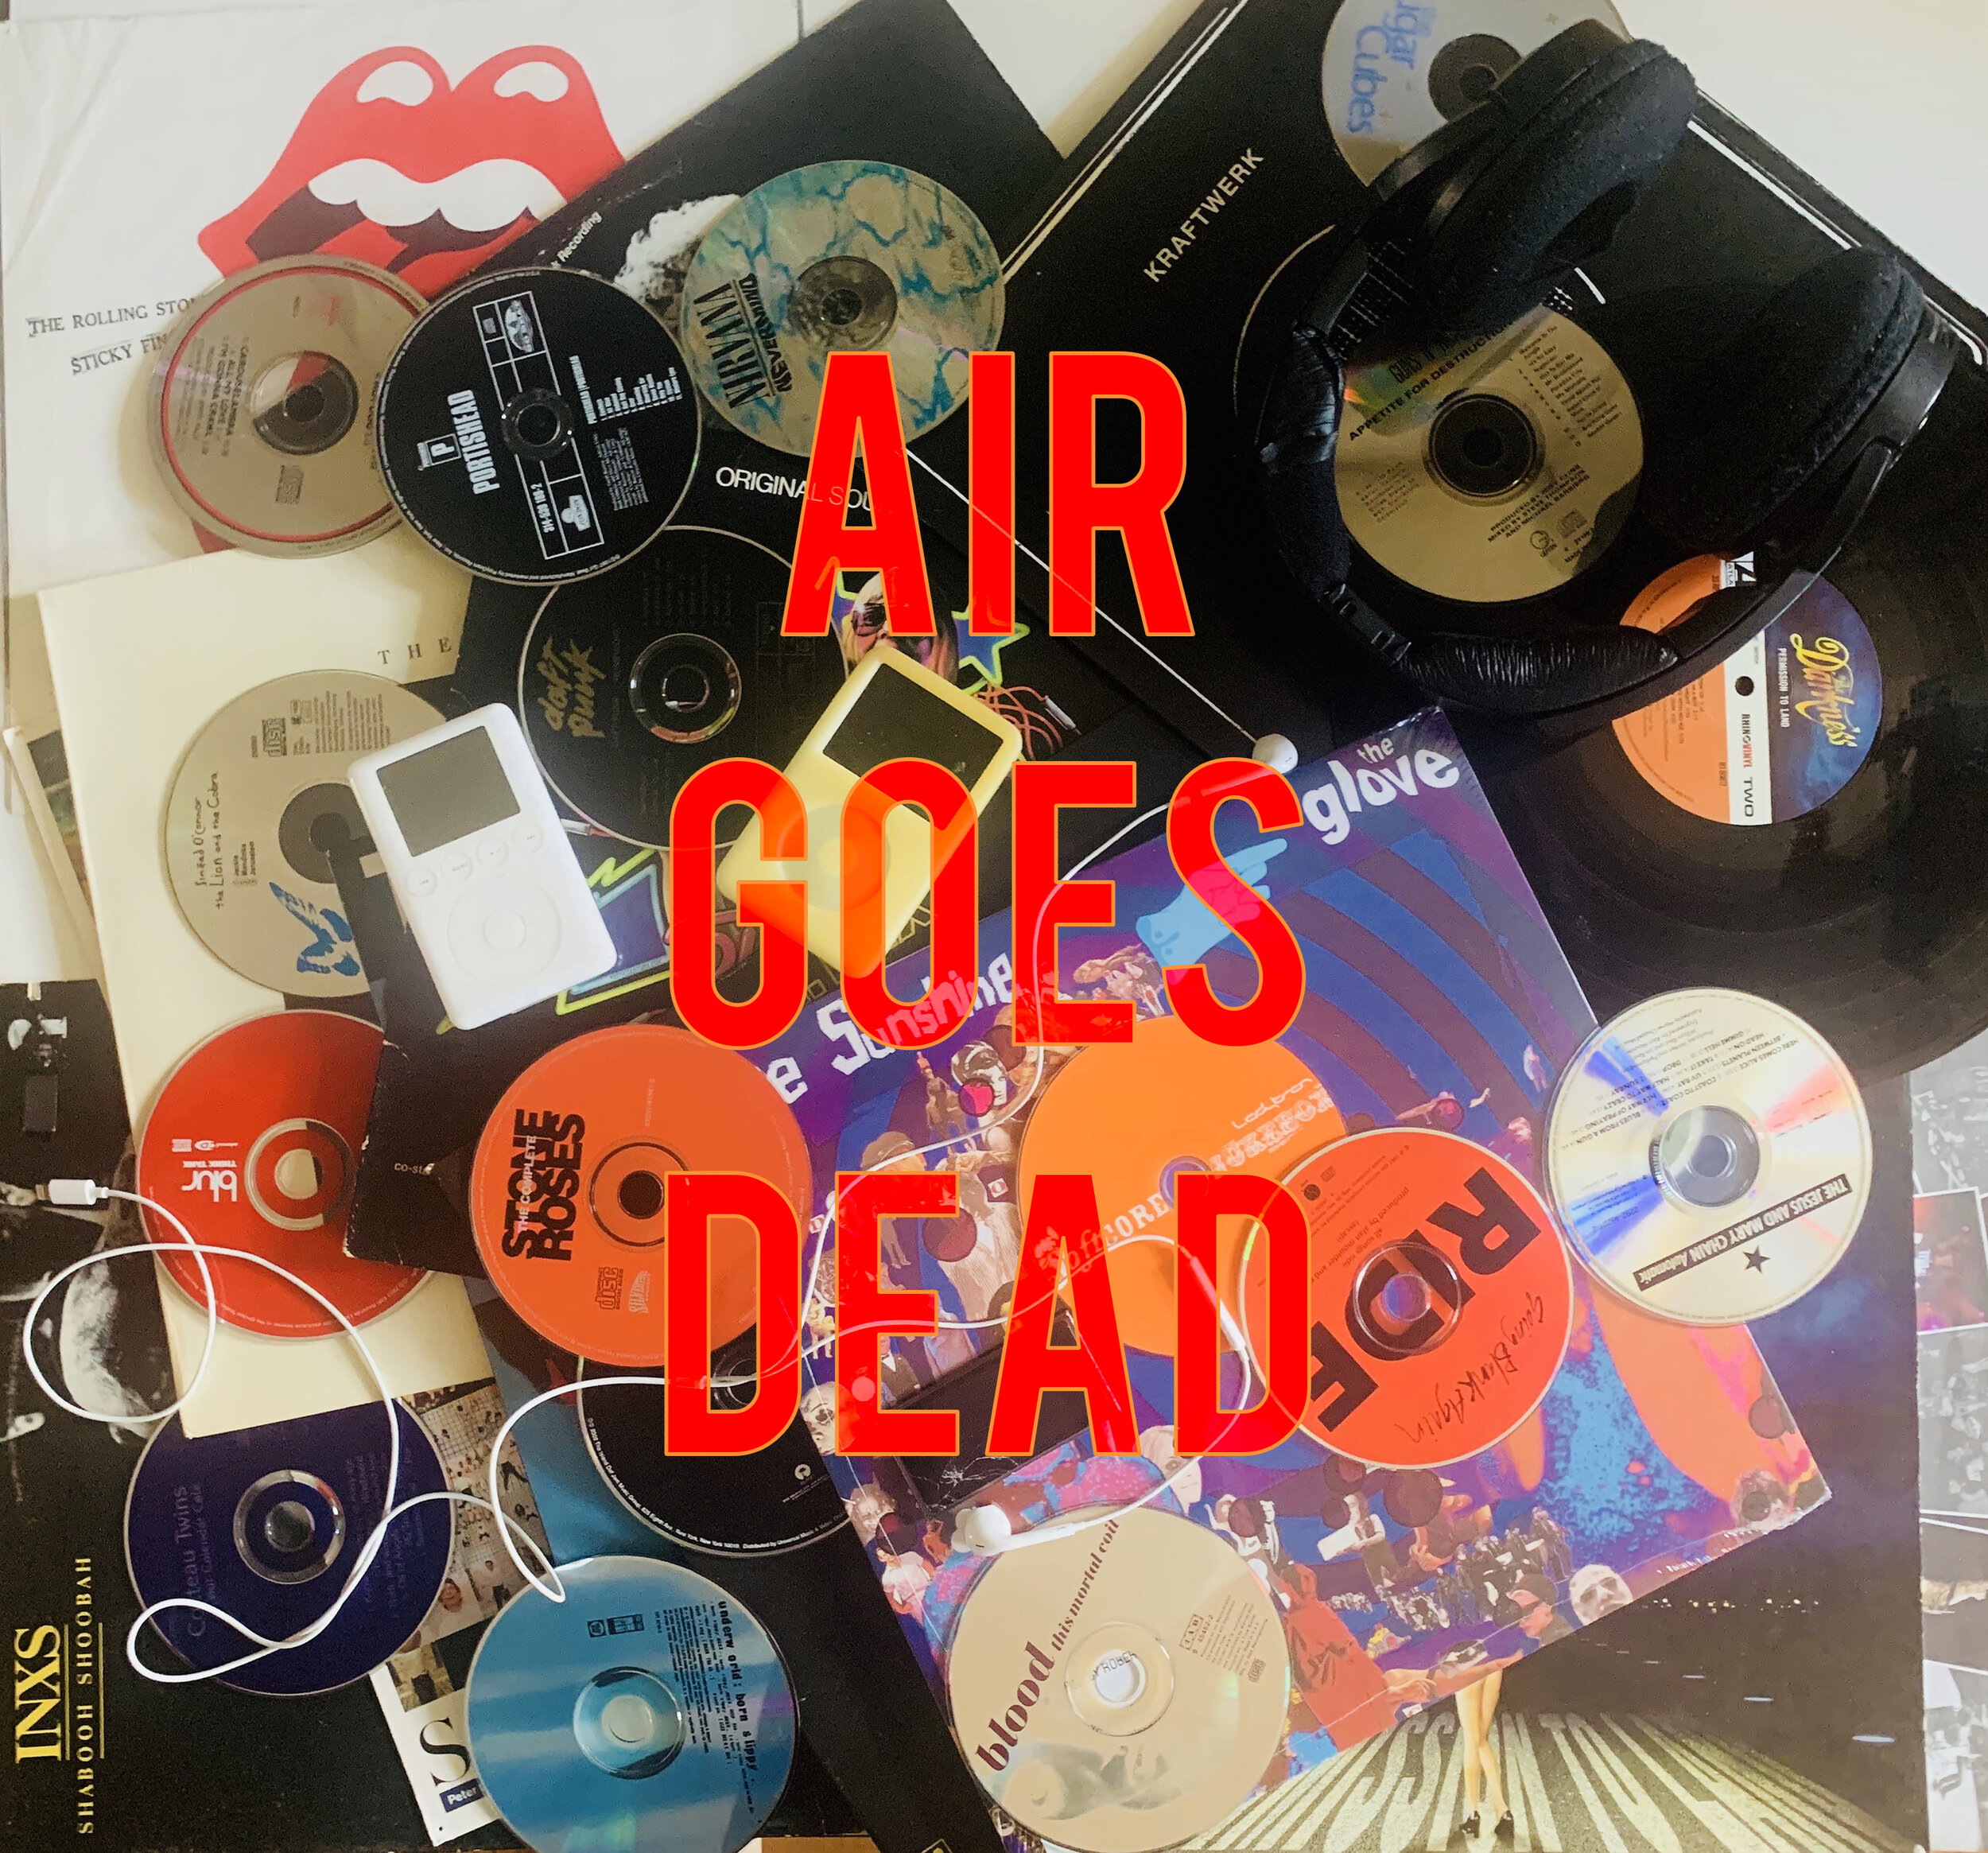 Air Goes Dead